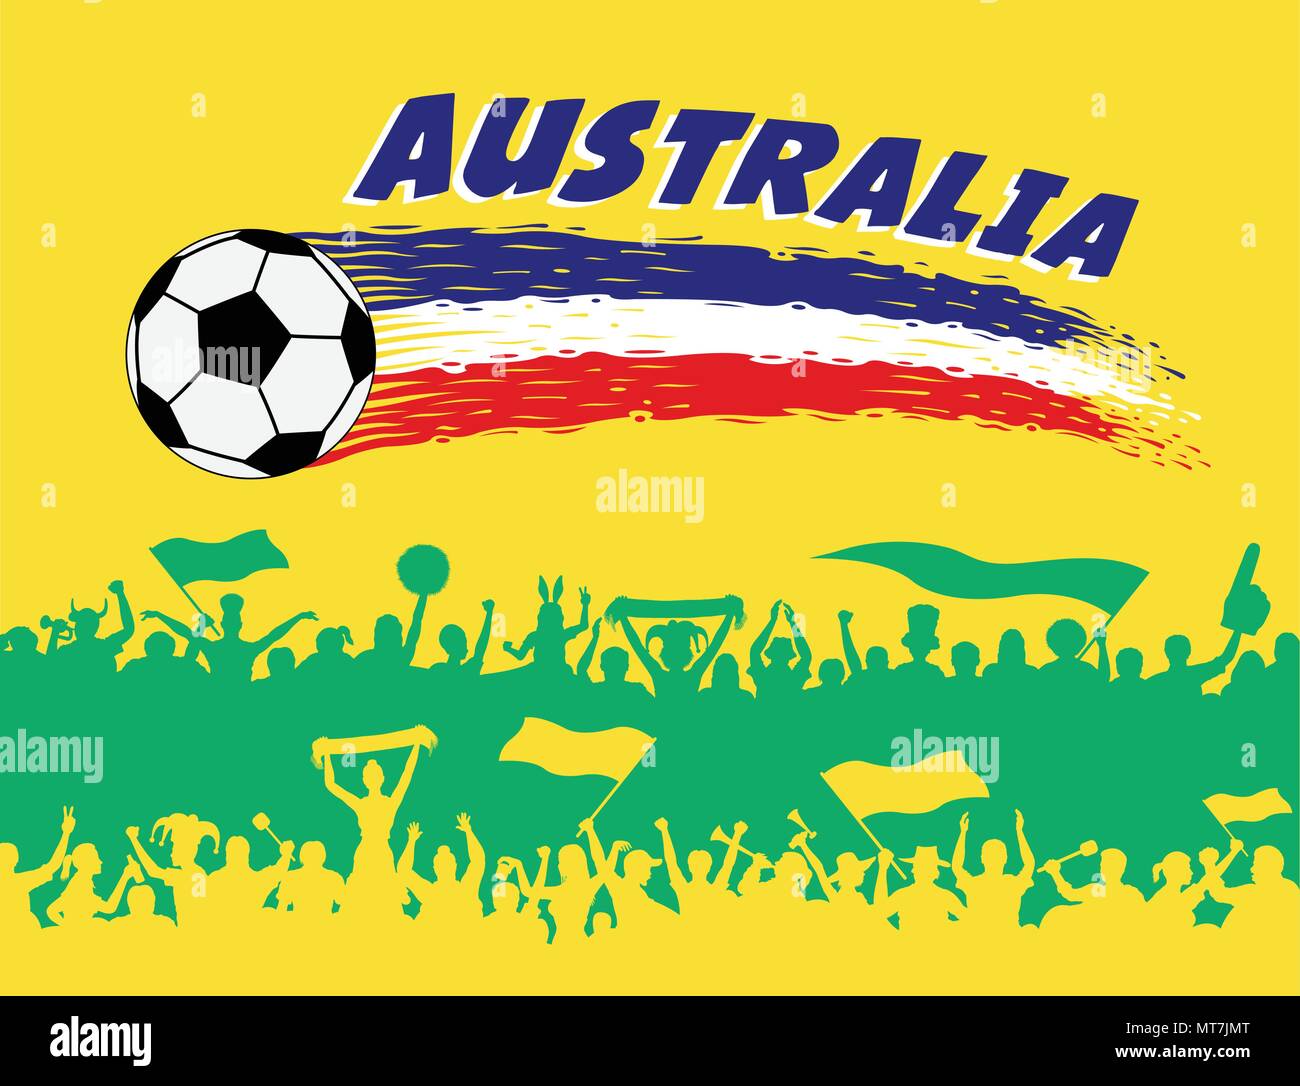 Australien Flagge Farben mit Fußball und australischen Fans Silhouetten. Alle Objekte, Pinselstriche und Silhouetten werden in verschiedenen Schichten ein Stock Vektor